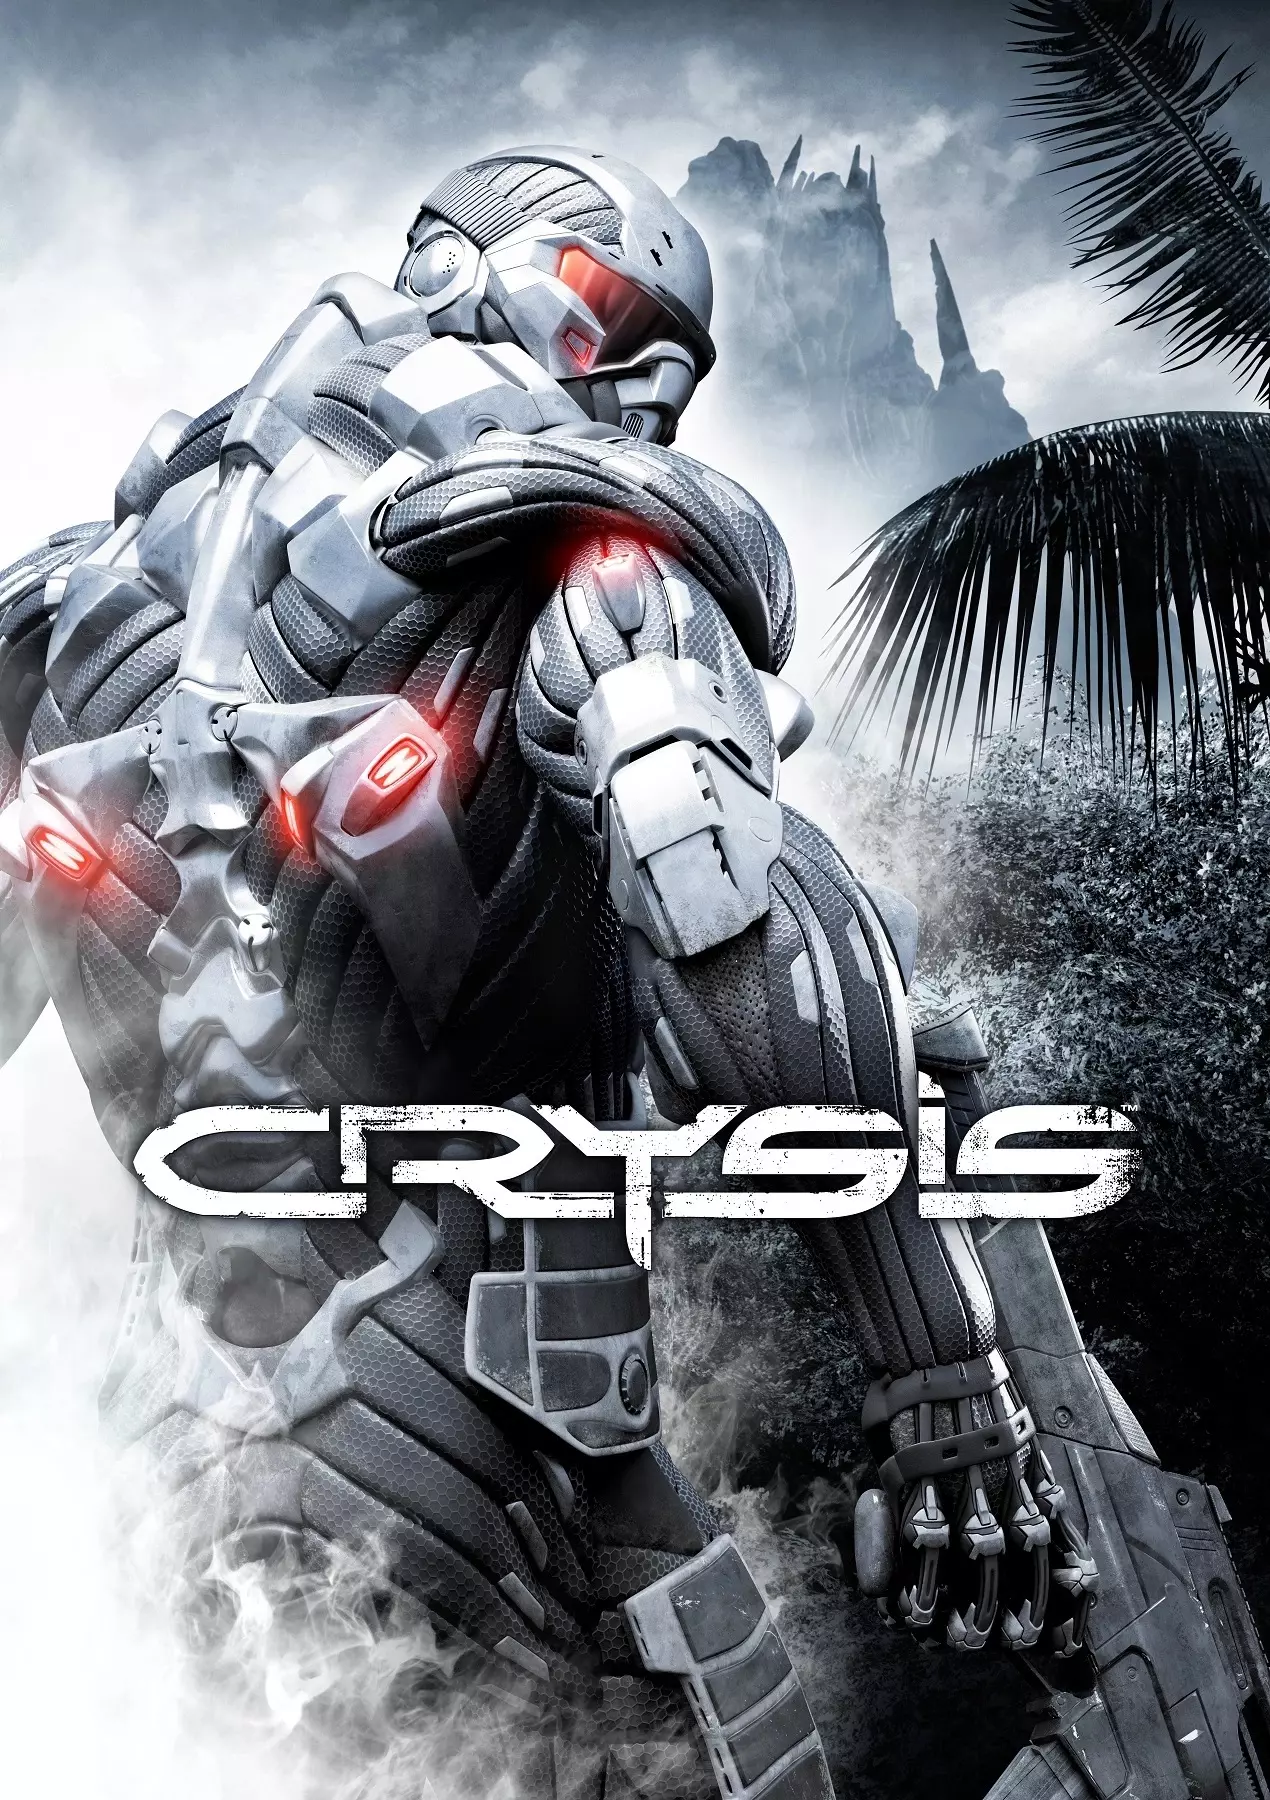 Crysis (МФА: [ˈkɹʌɪsɪs]) — мультиплатформенная компьютерная игра, научно-фантастический шутер от первого лица, разработанный немецкой компанией Crytek и изданный Electronic Arts.